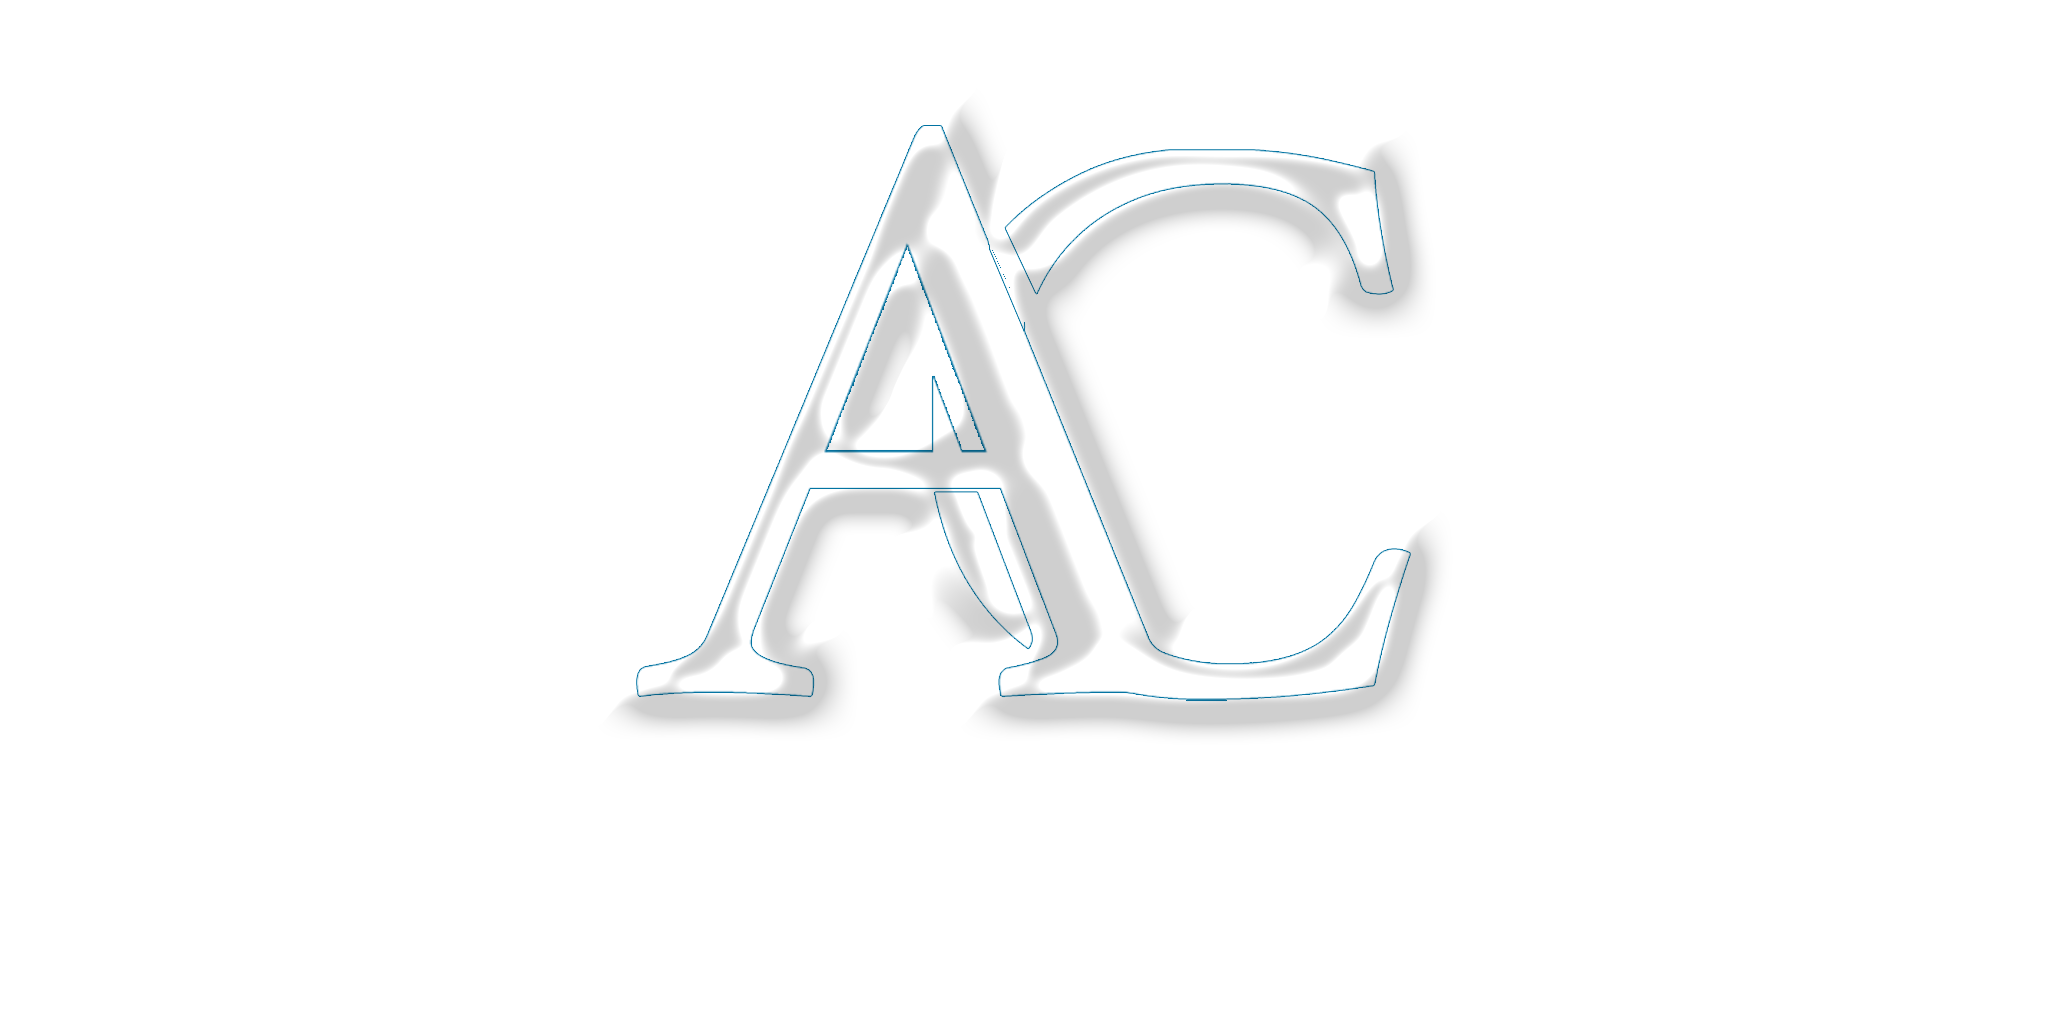 a-plus repair austin tx logo